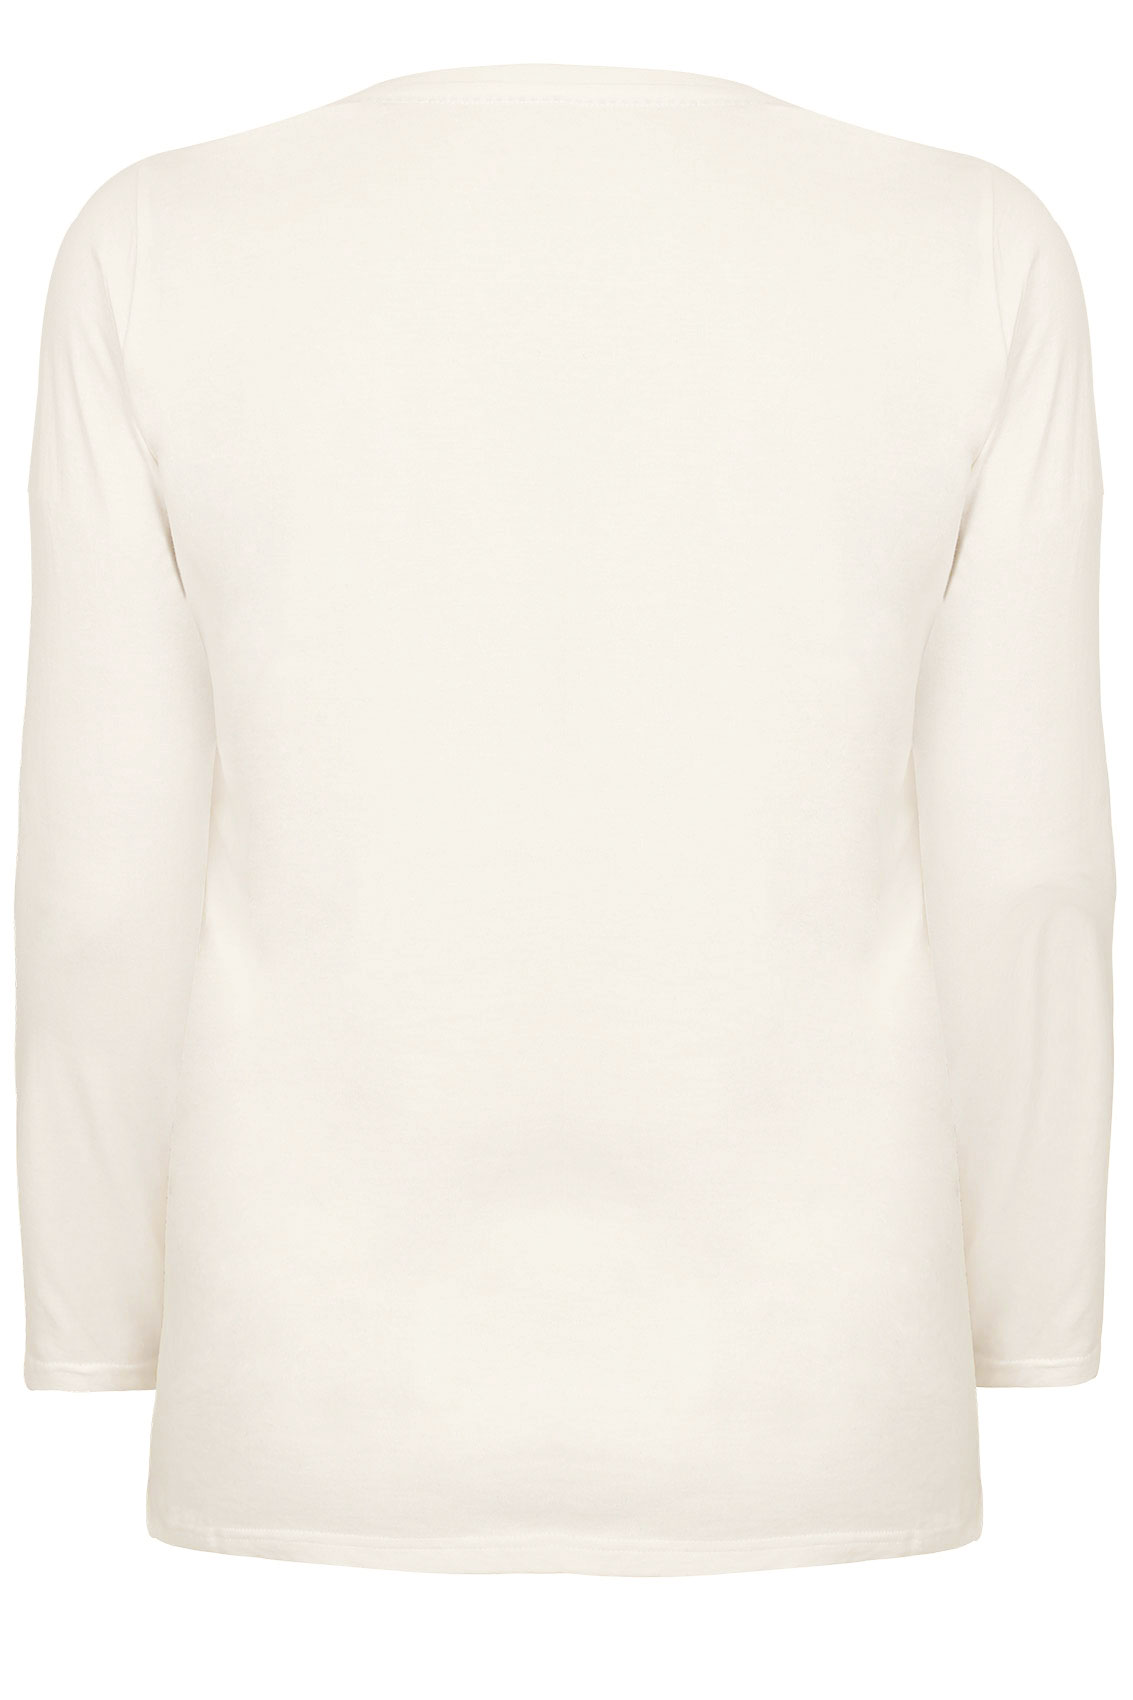 Ivory Long Sleeved V-Neck Basic T-Shirt Plus Size 16 to 36